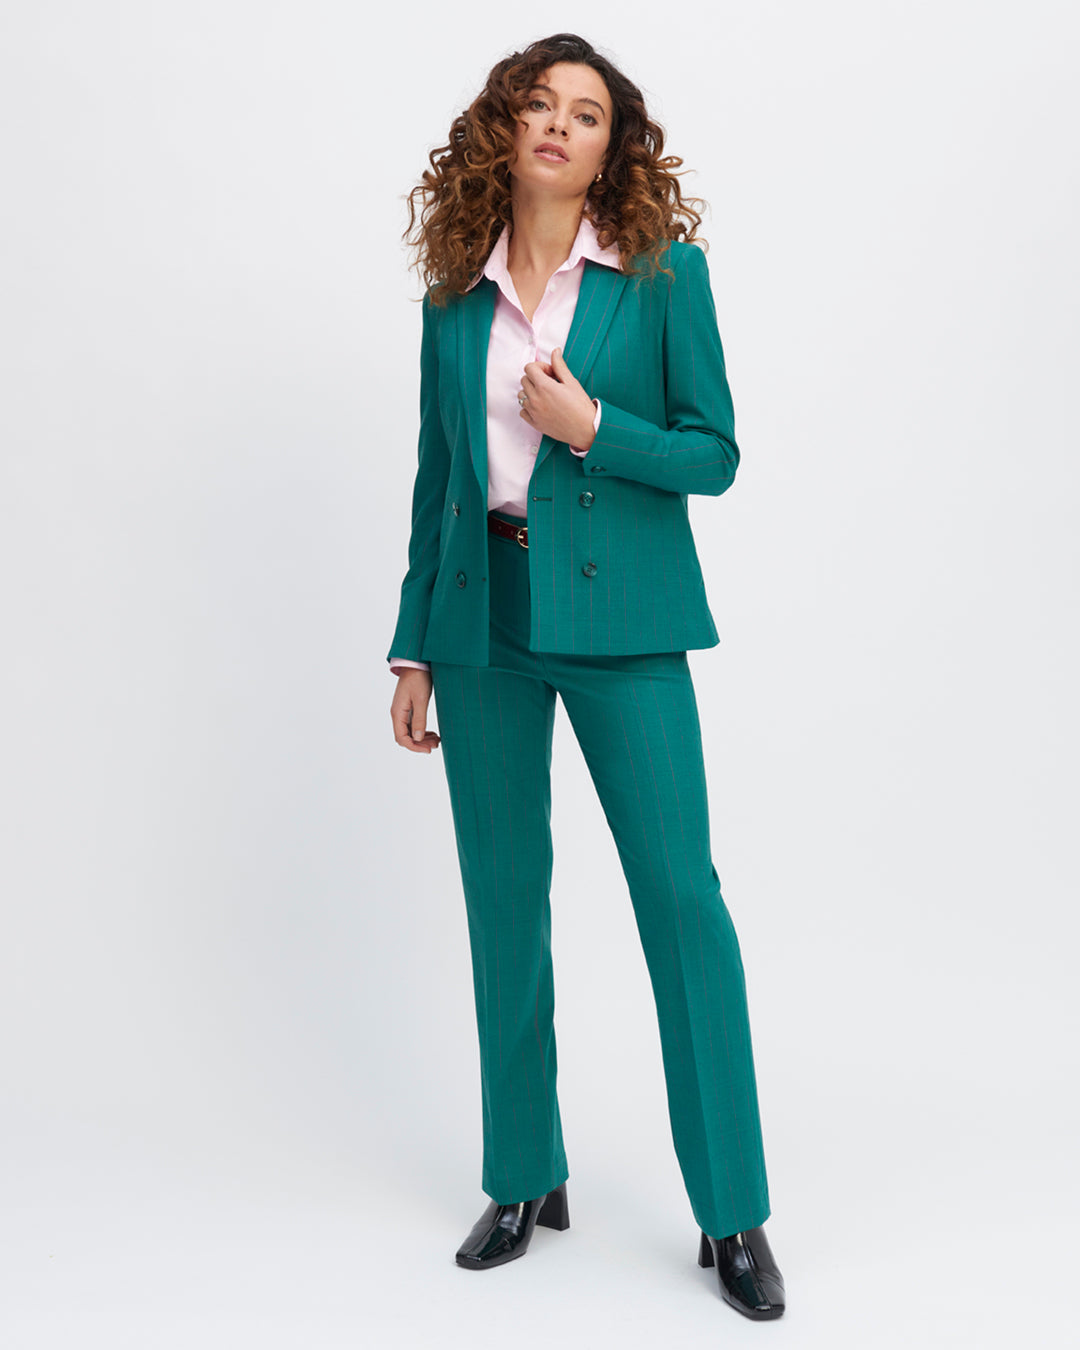 pantalon-vert-emeraude-coupe-droite-taille-haute-plis-devant-fermeture-zip-avec-crochet-17H10-tailleurs-pour-femme-paris-